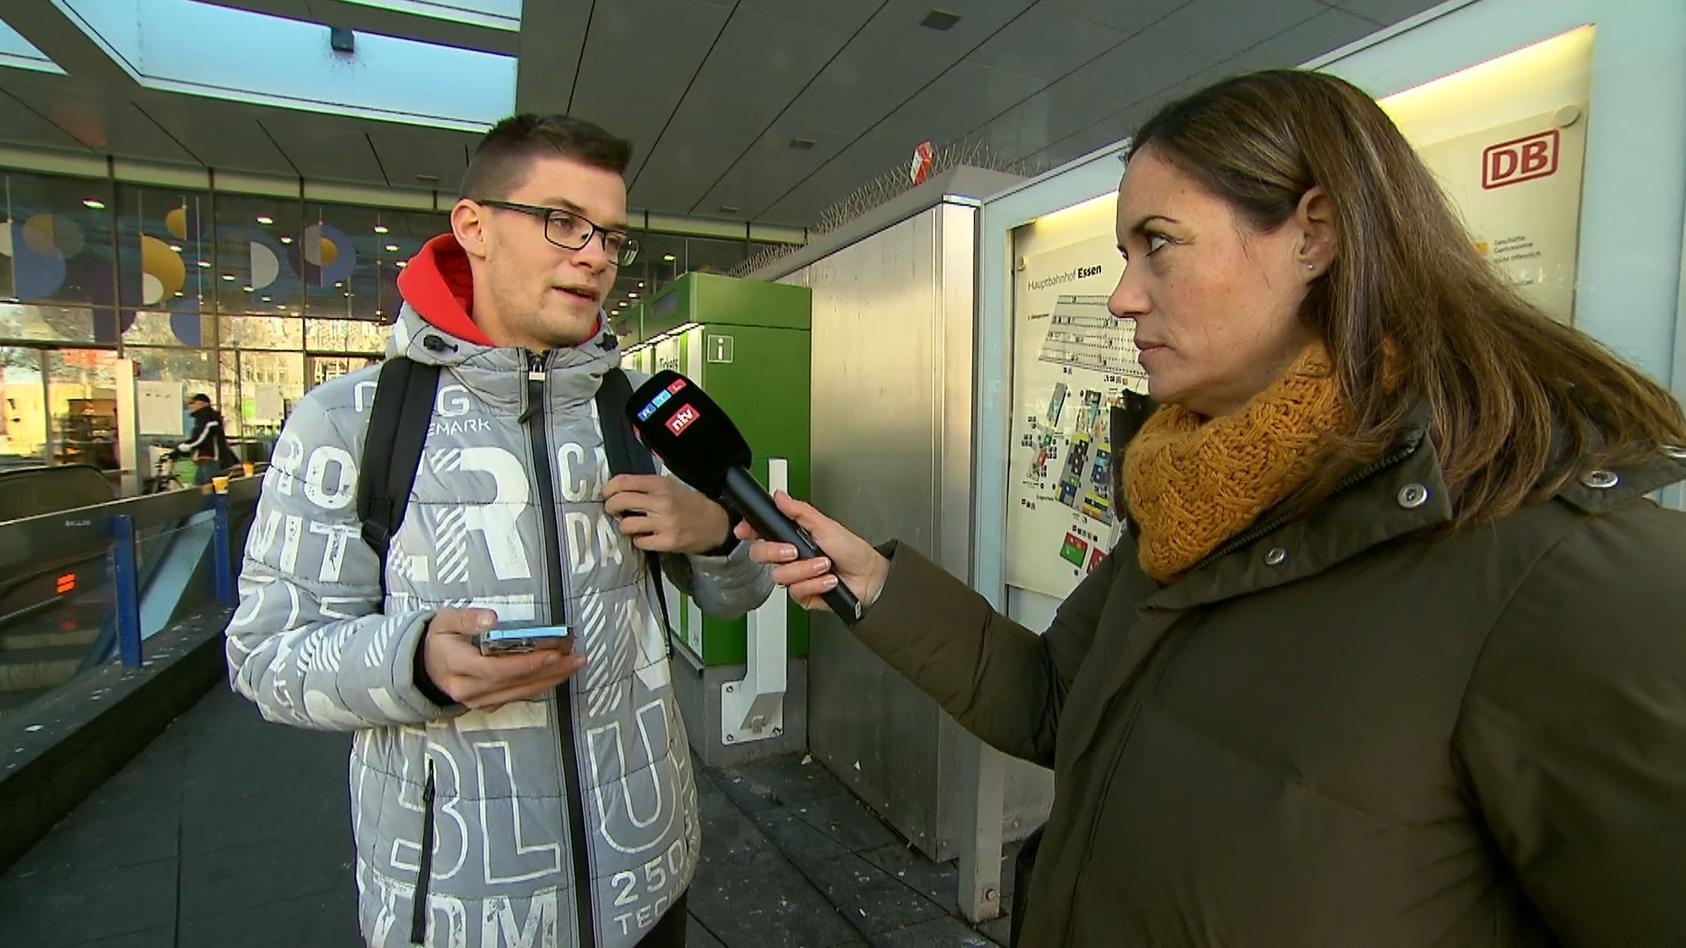 RTL konfrontiert Minister mit Bahn-Recherche Chaos und Verspätungen